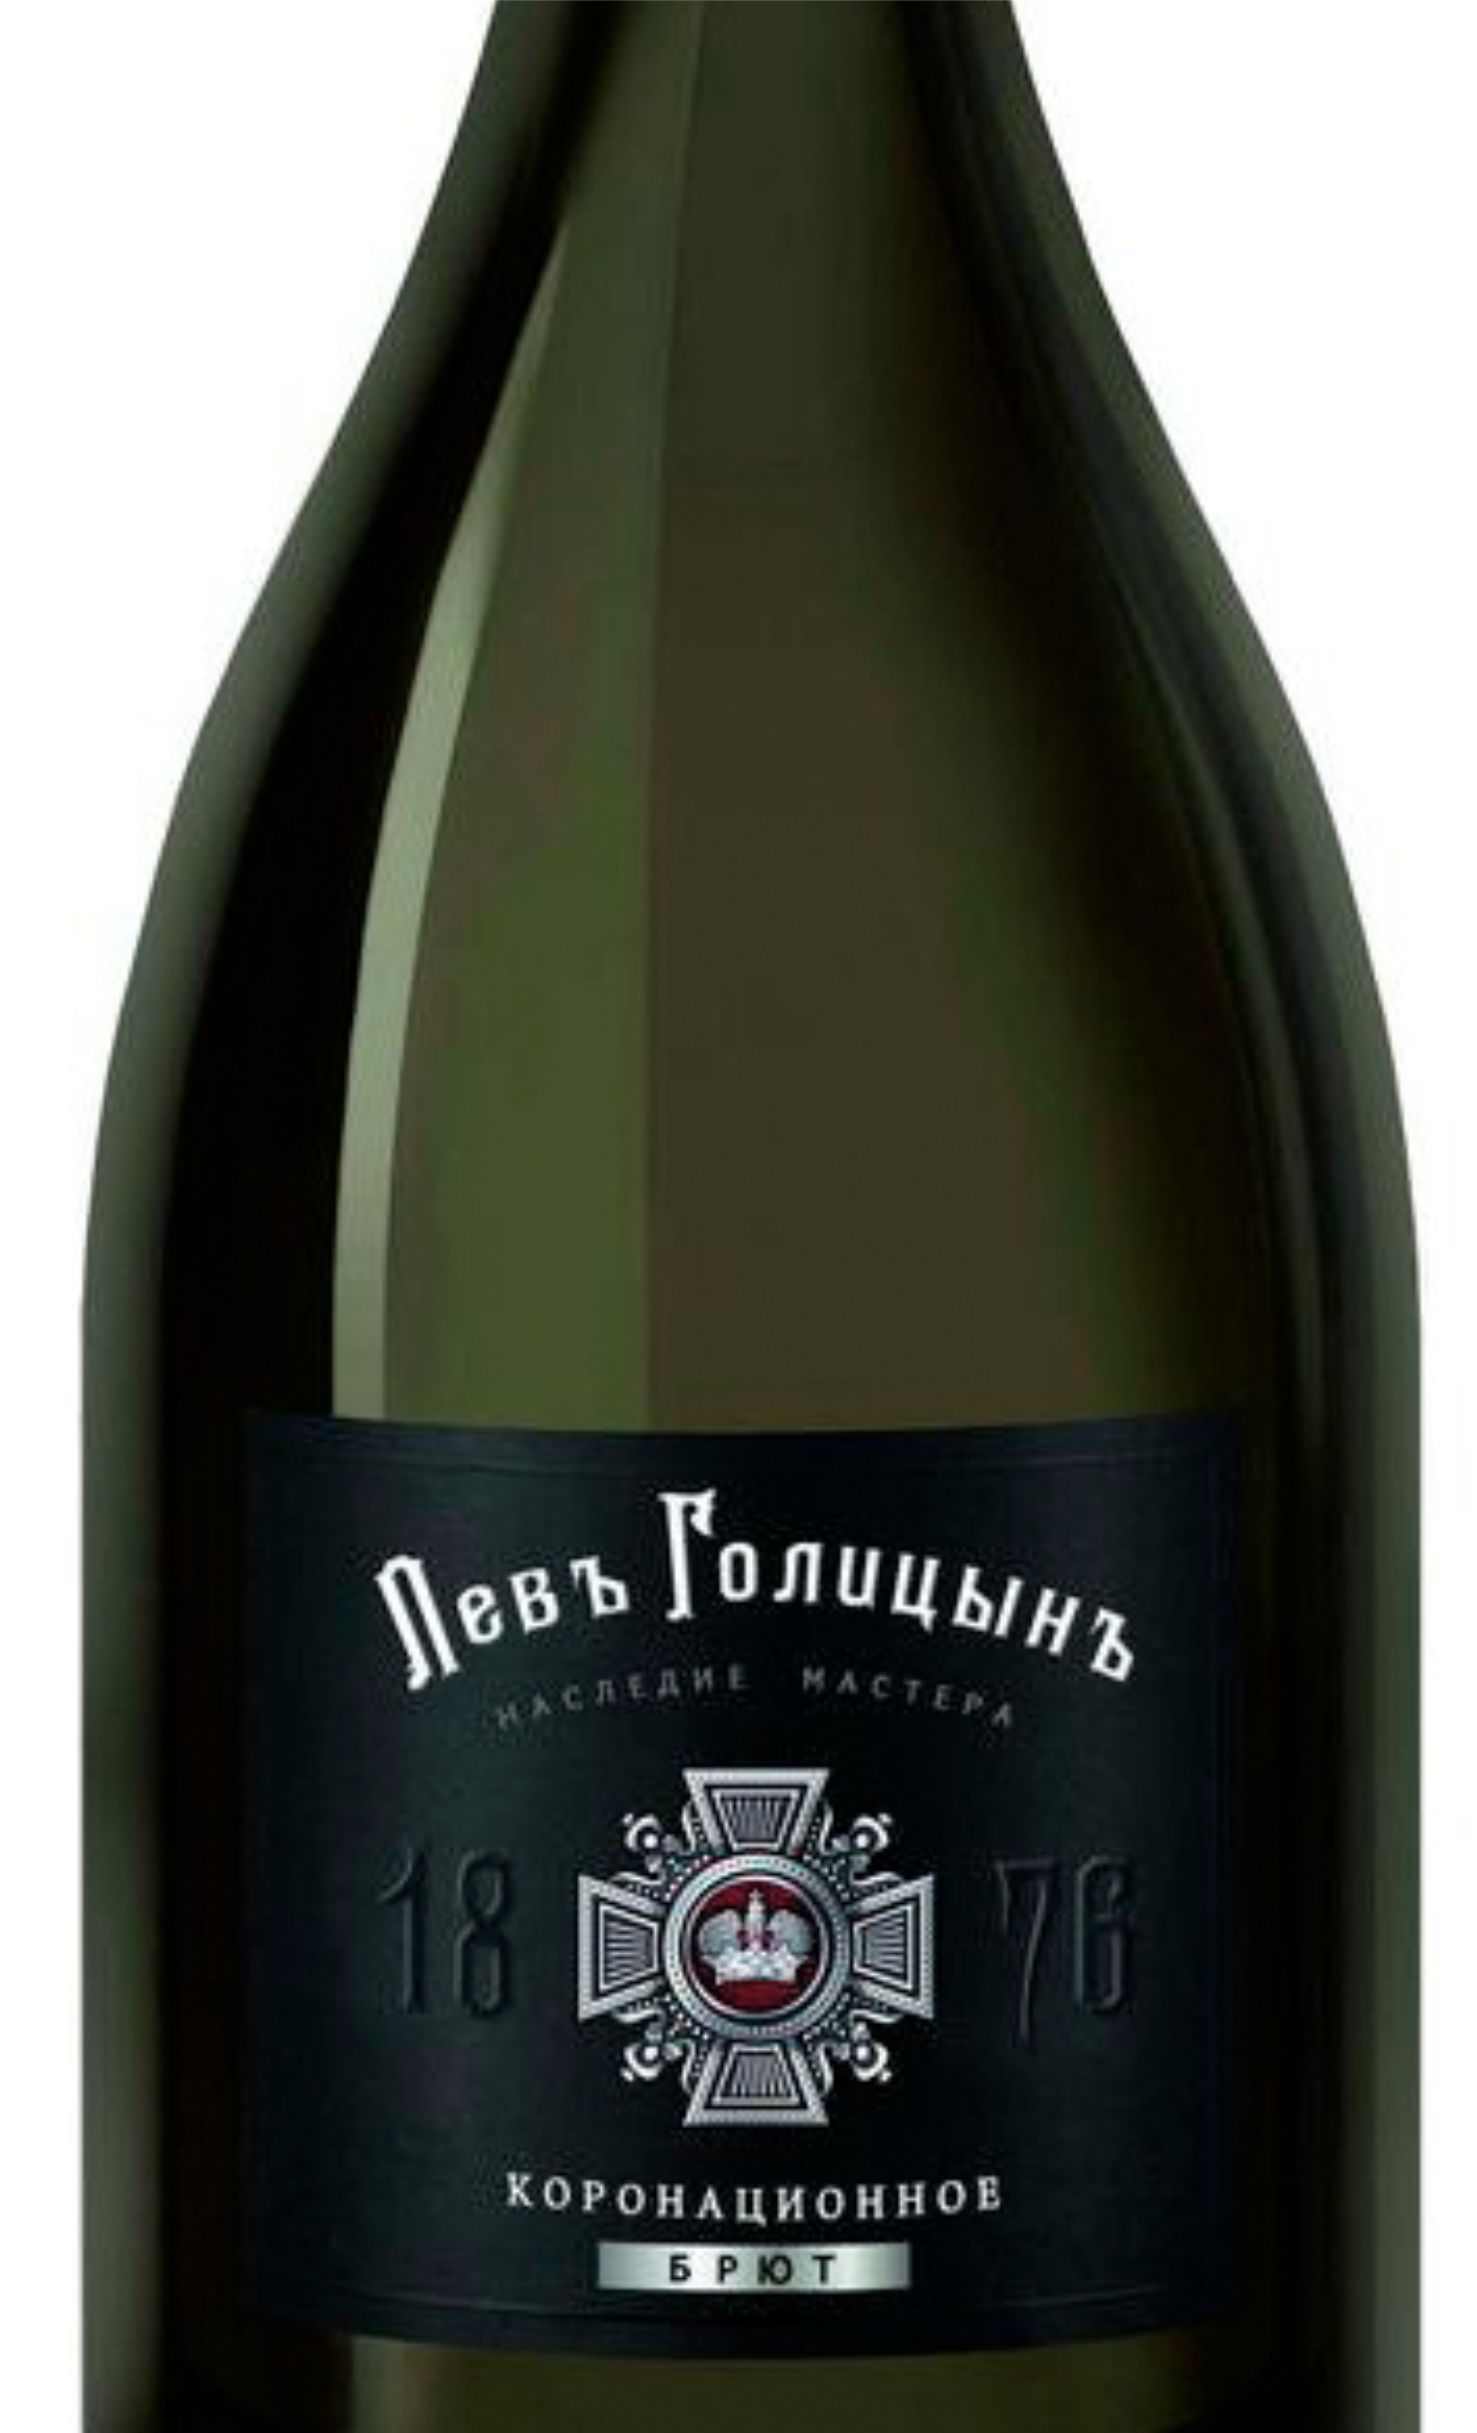 Этикетка Игристое вино Наследие Мастера "Левъ Голицынъ Коронационное", белое брют, 0.75 л